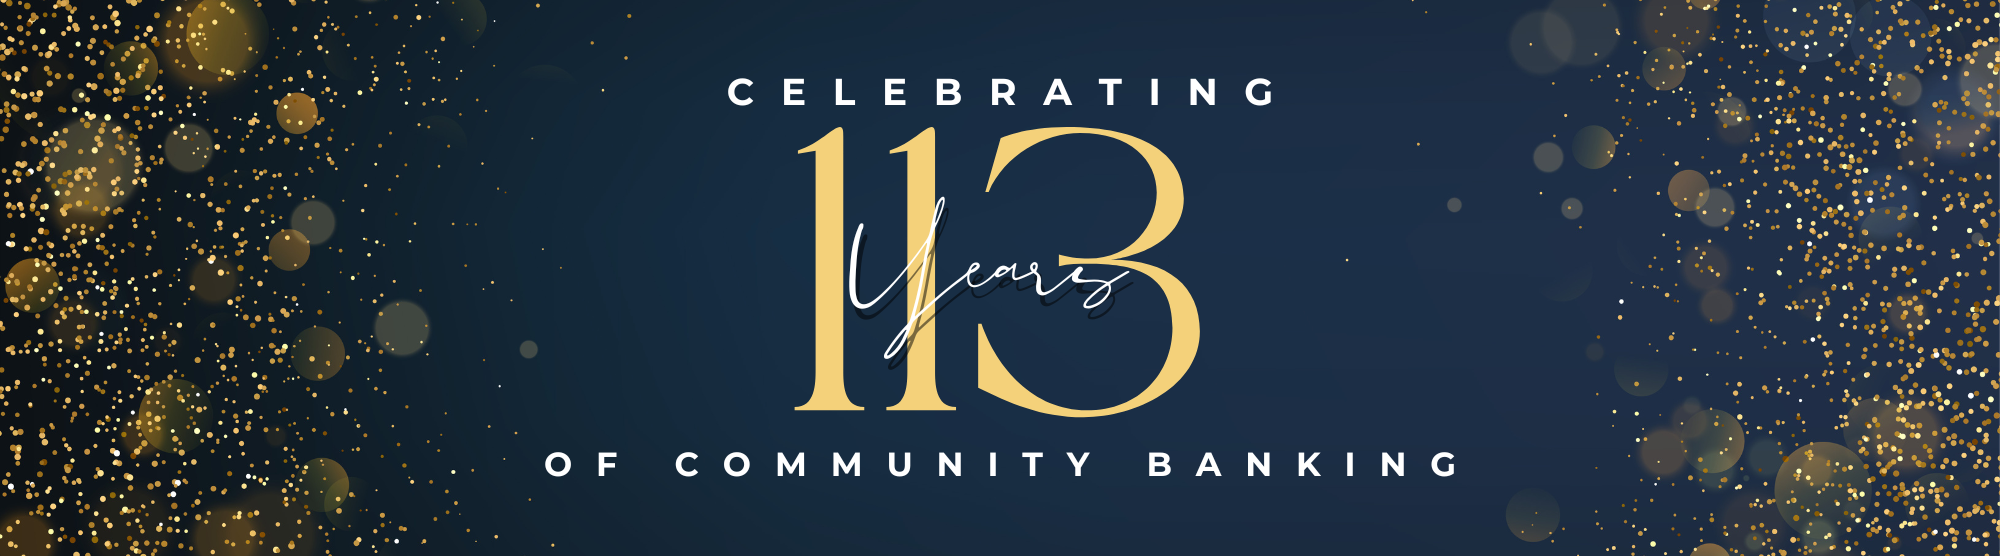 Celebrating 113 years of community banking